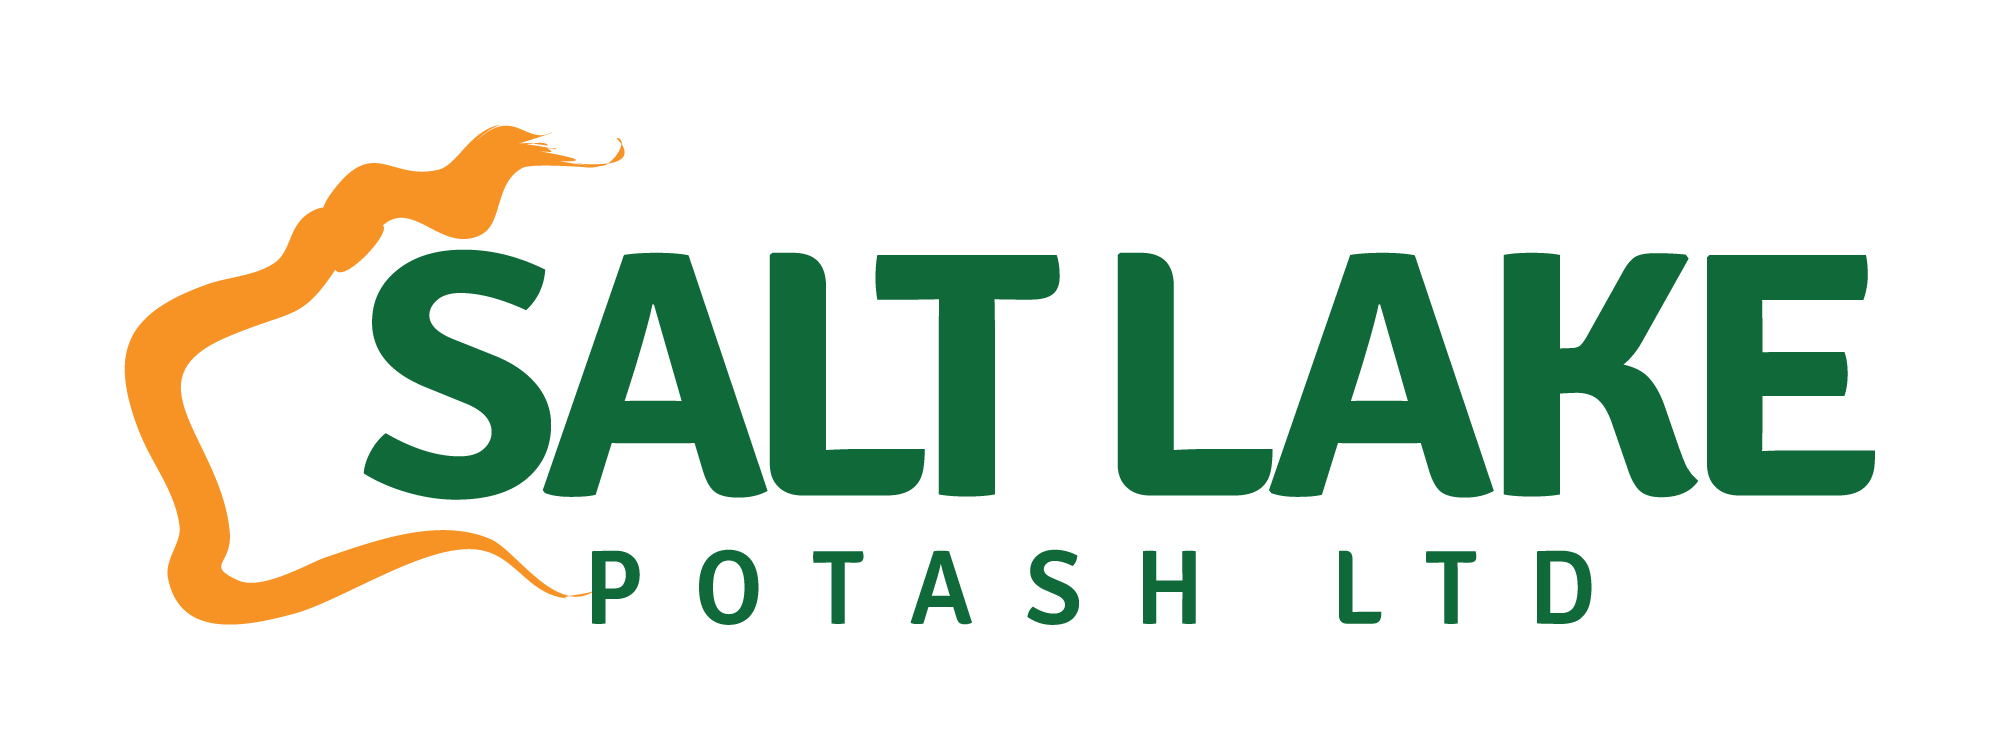 Salt Lake Potash Limited Logo